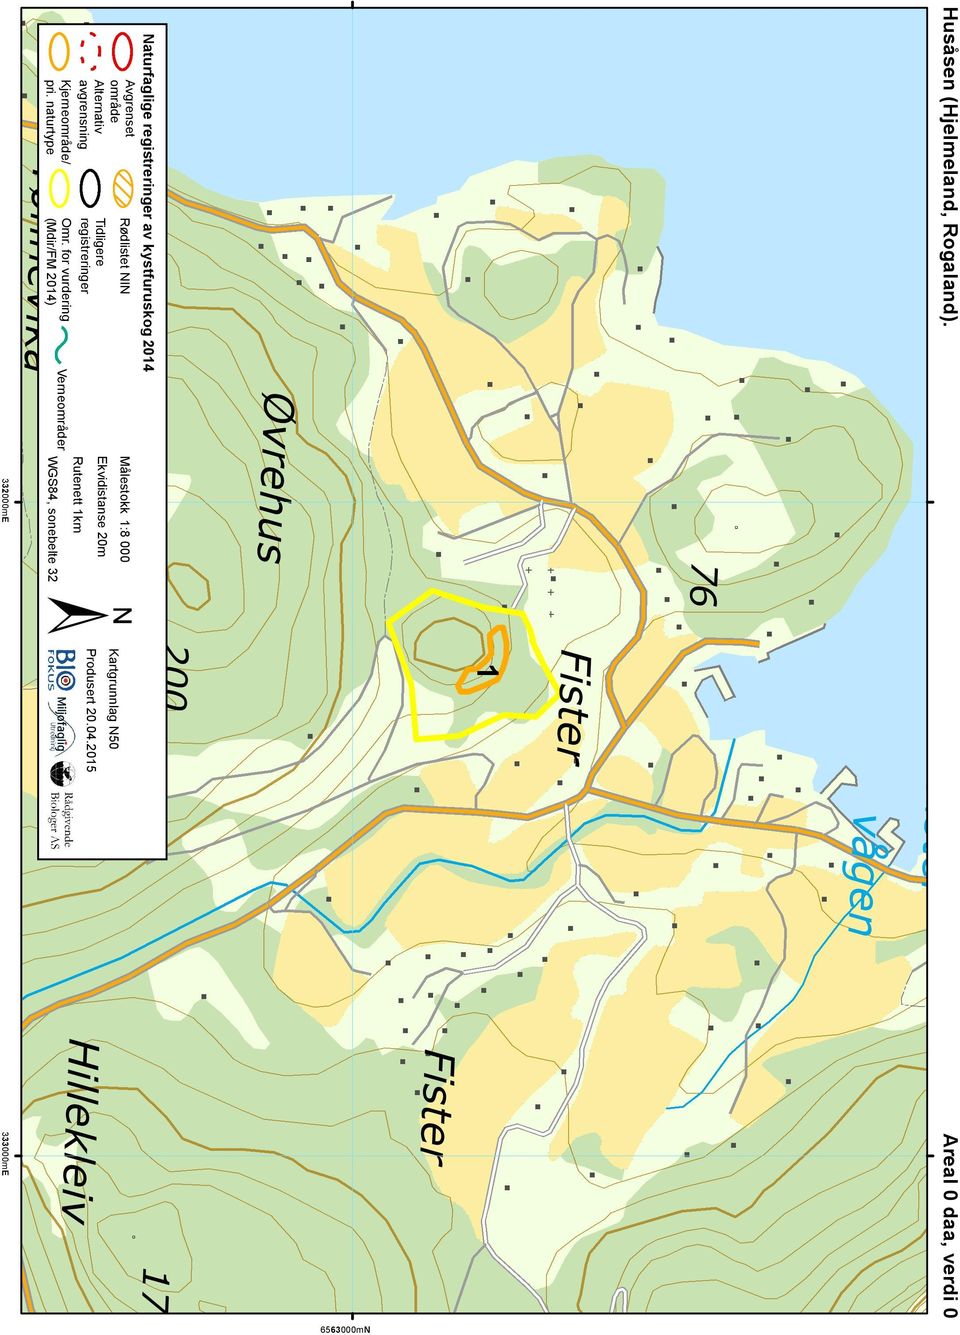 2015 Ekvidistanse 20m Hillekleiv Kartgrunnlag N50 Rødlistet NIN Målestokk 1:8 000 Naturfaglige registreringer av